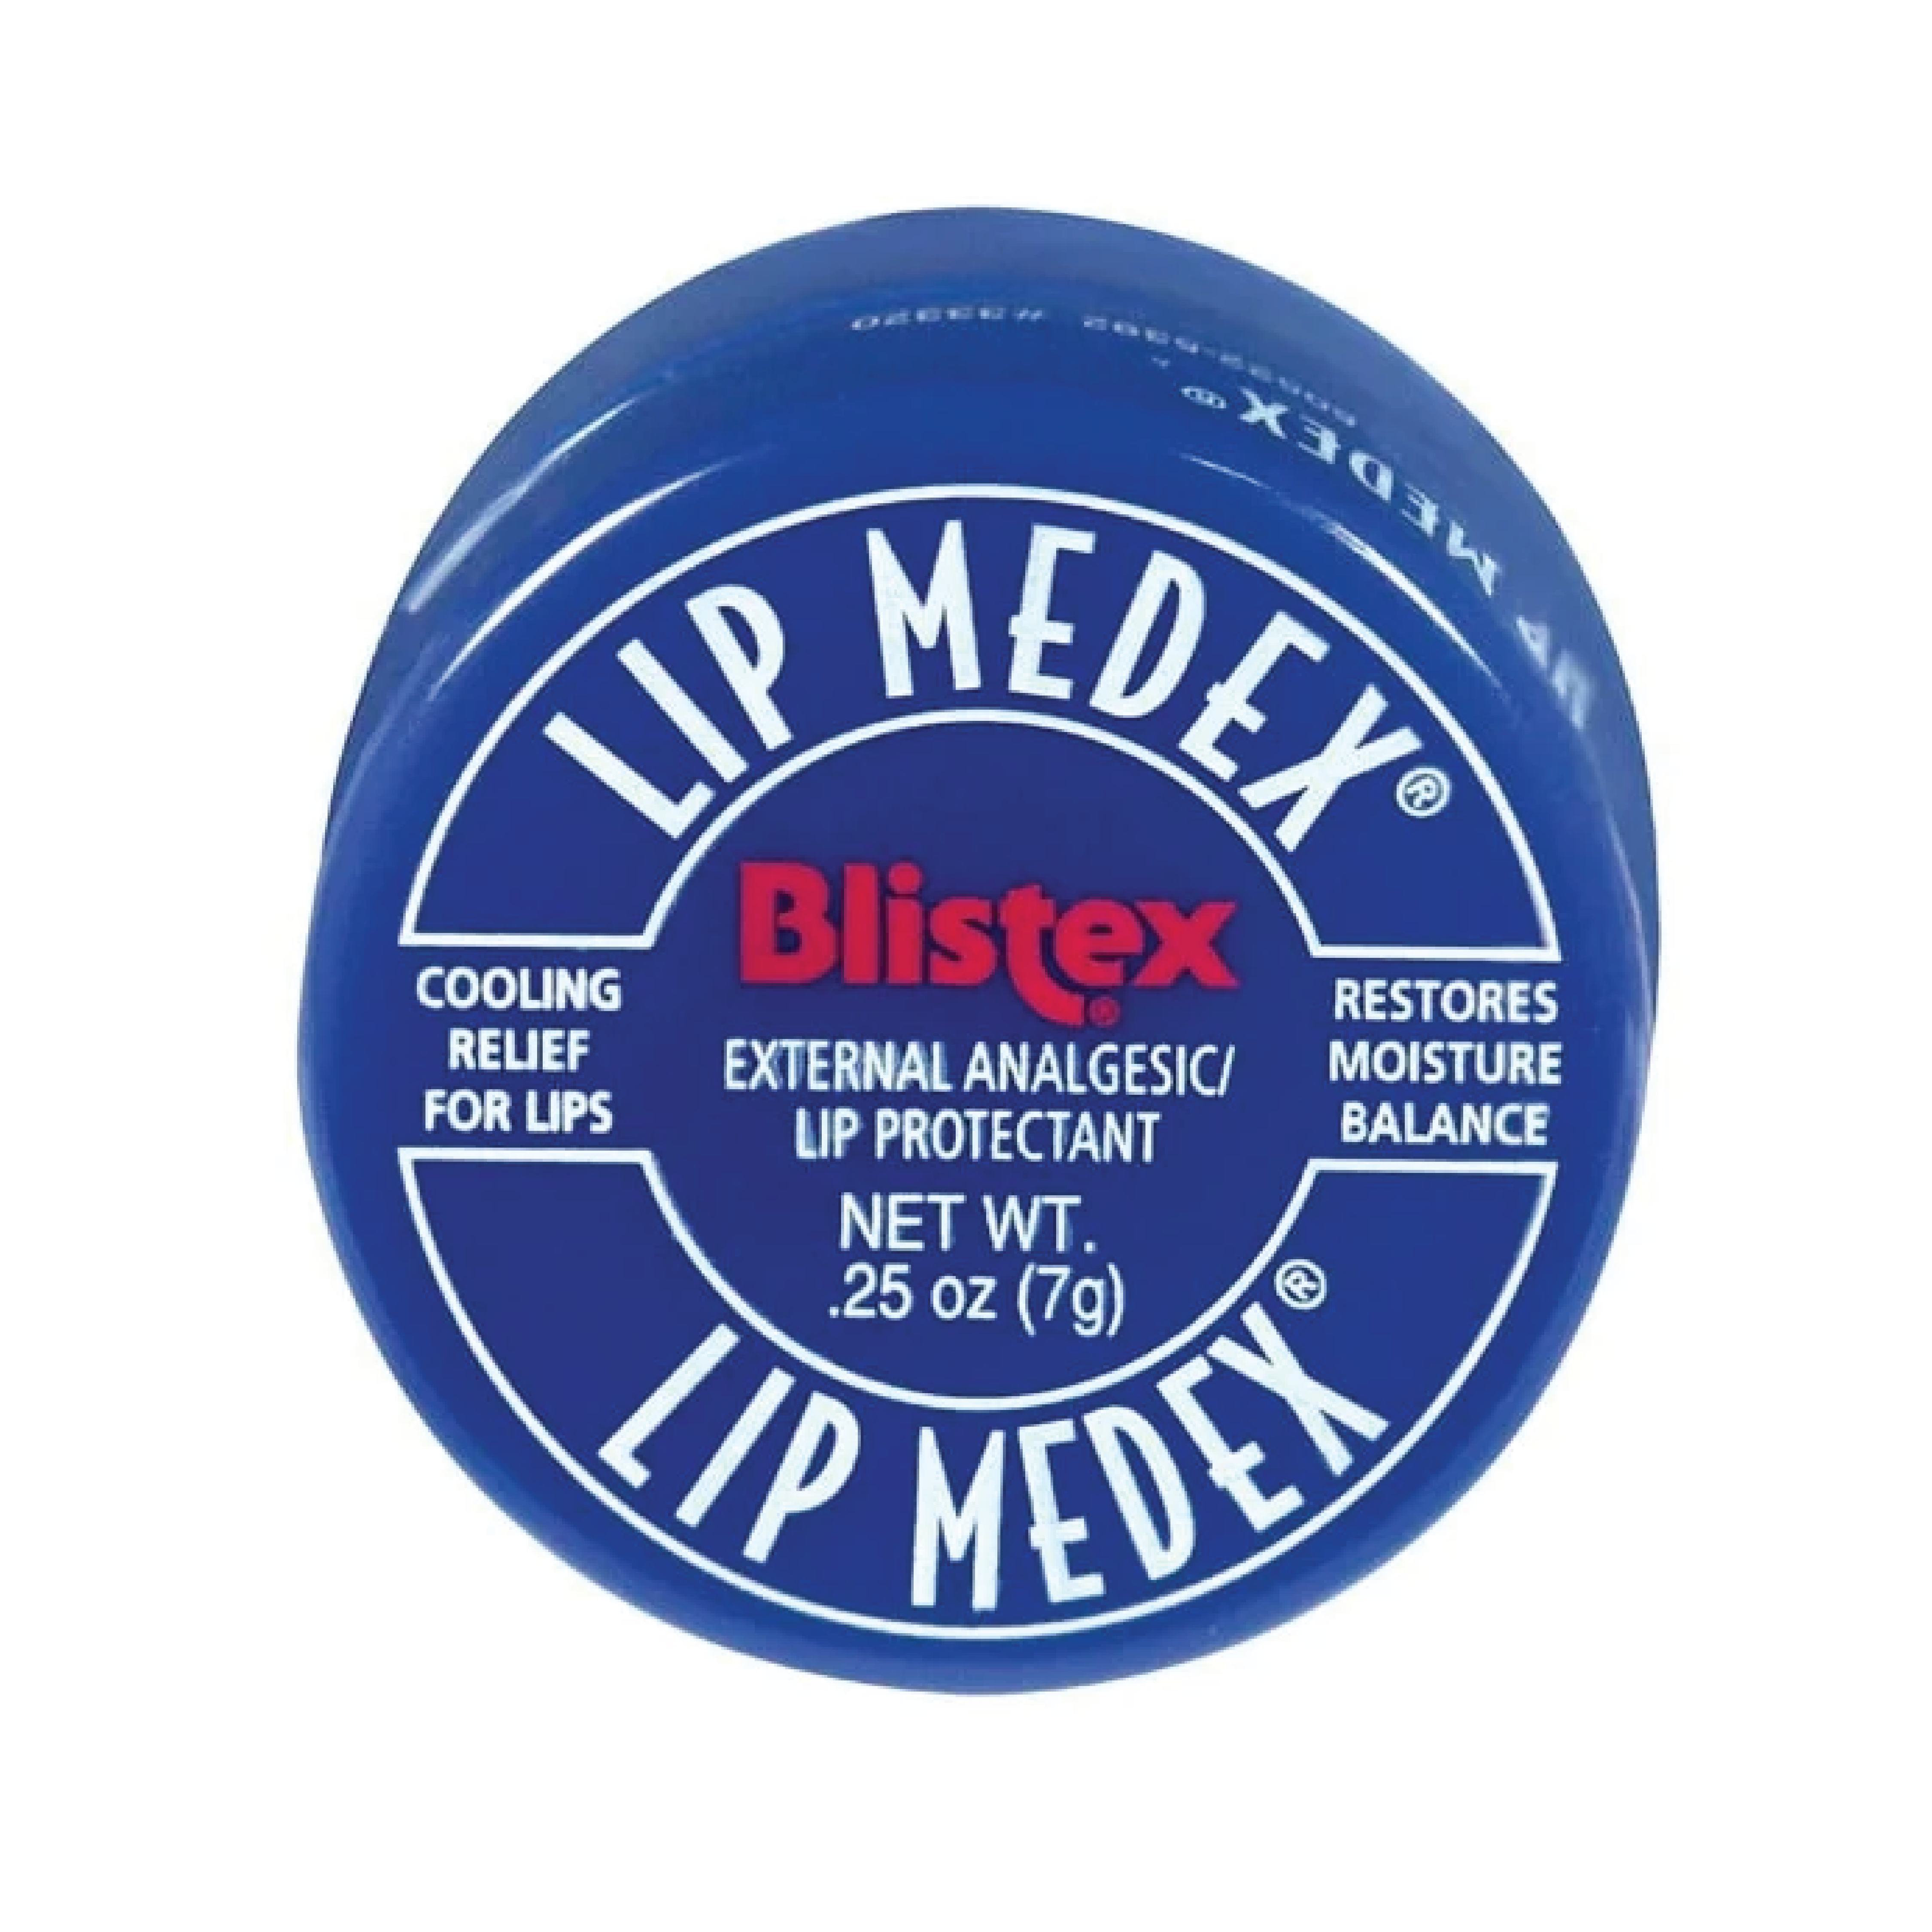 Blistex Lip Medex .25oz